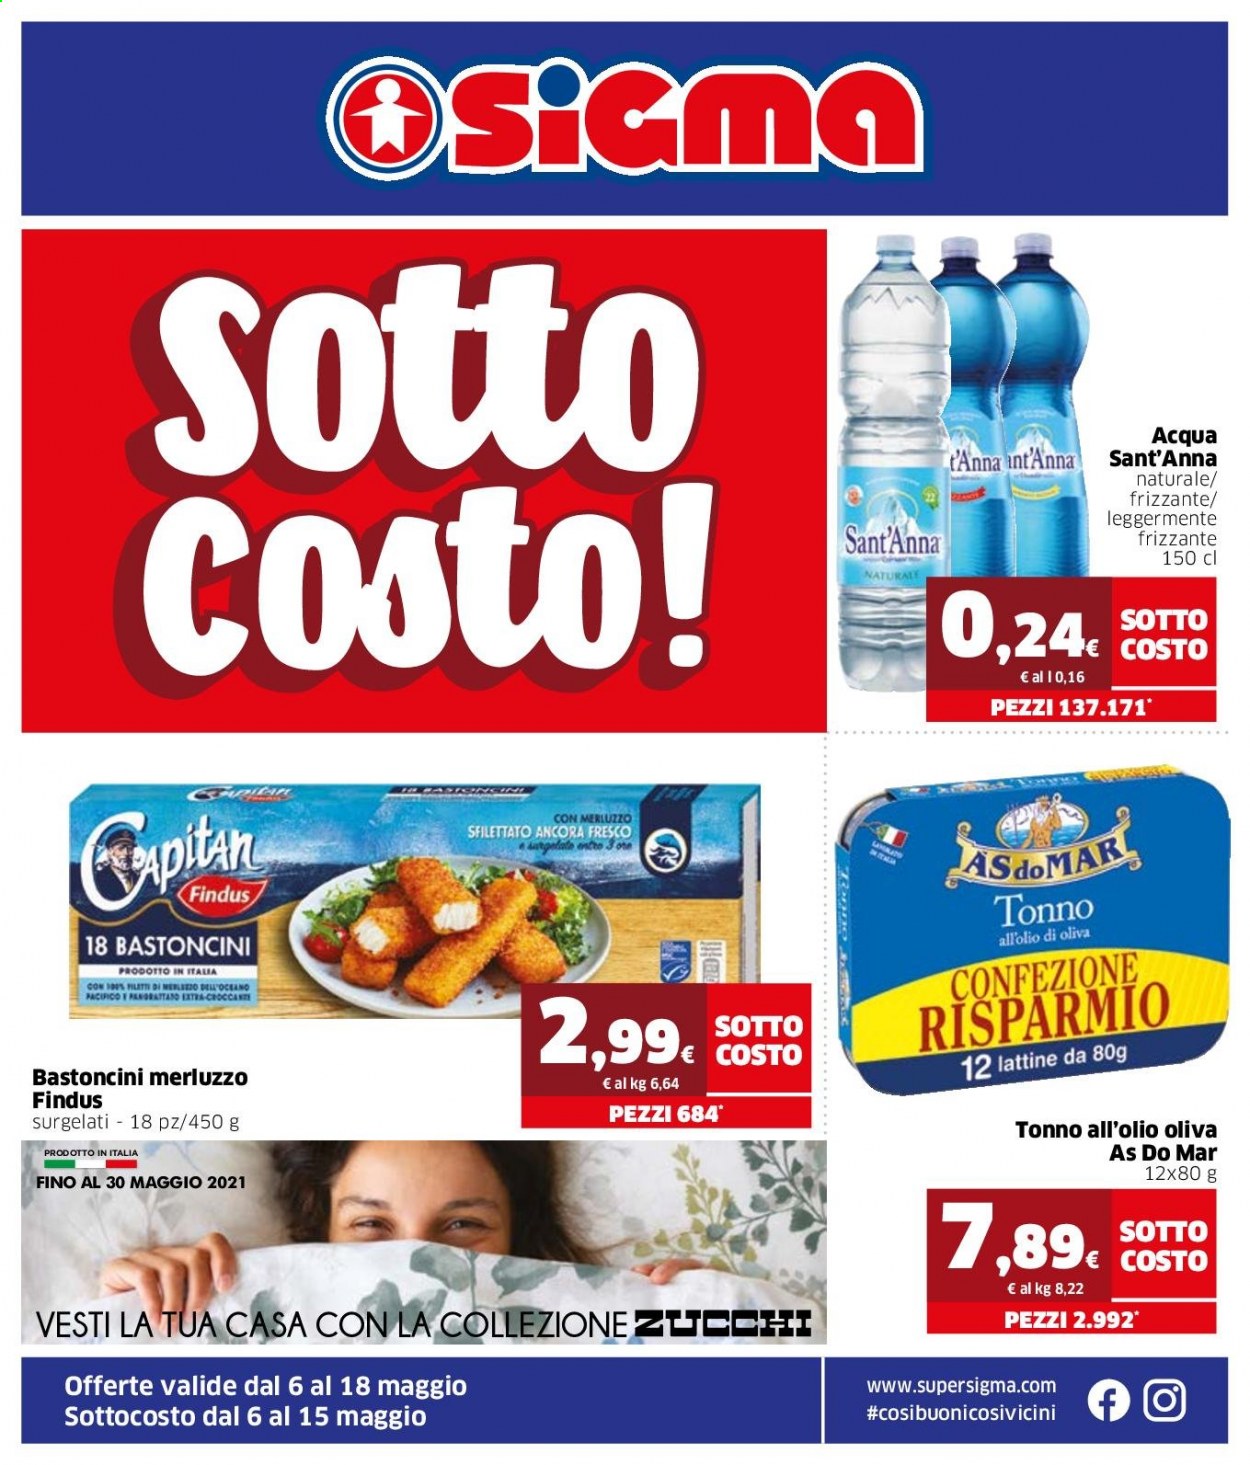 thumbnail - Volantino Sigma - 6/5/2021 - 18/5/2021 - Prodotti in offerta - Findus, tonno, bastoncini, tonno sott'olio, AsdoMAR, Sant'Anna, acqua leggermente frizzante. Pagina 1.